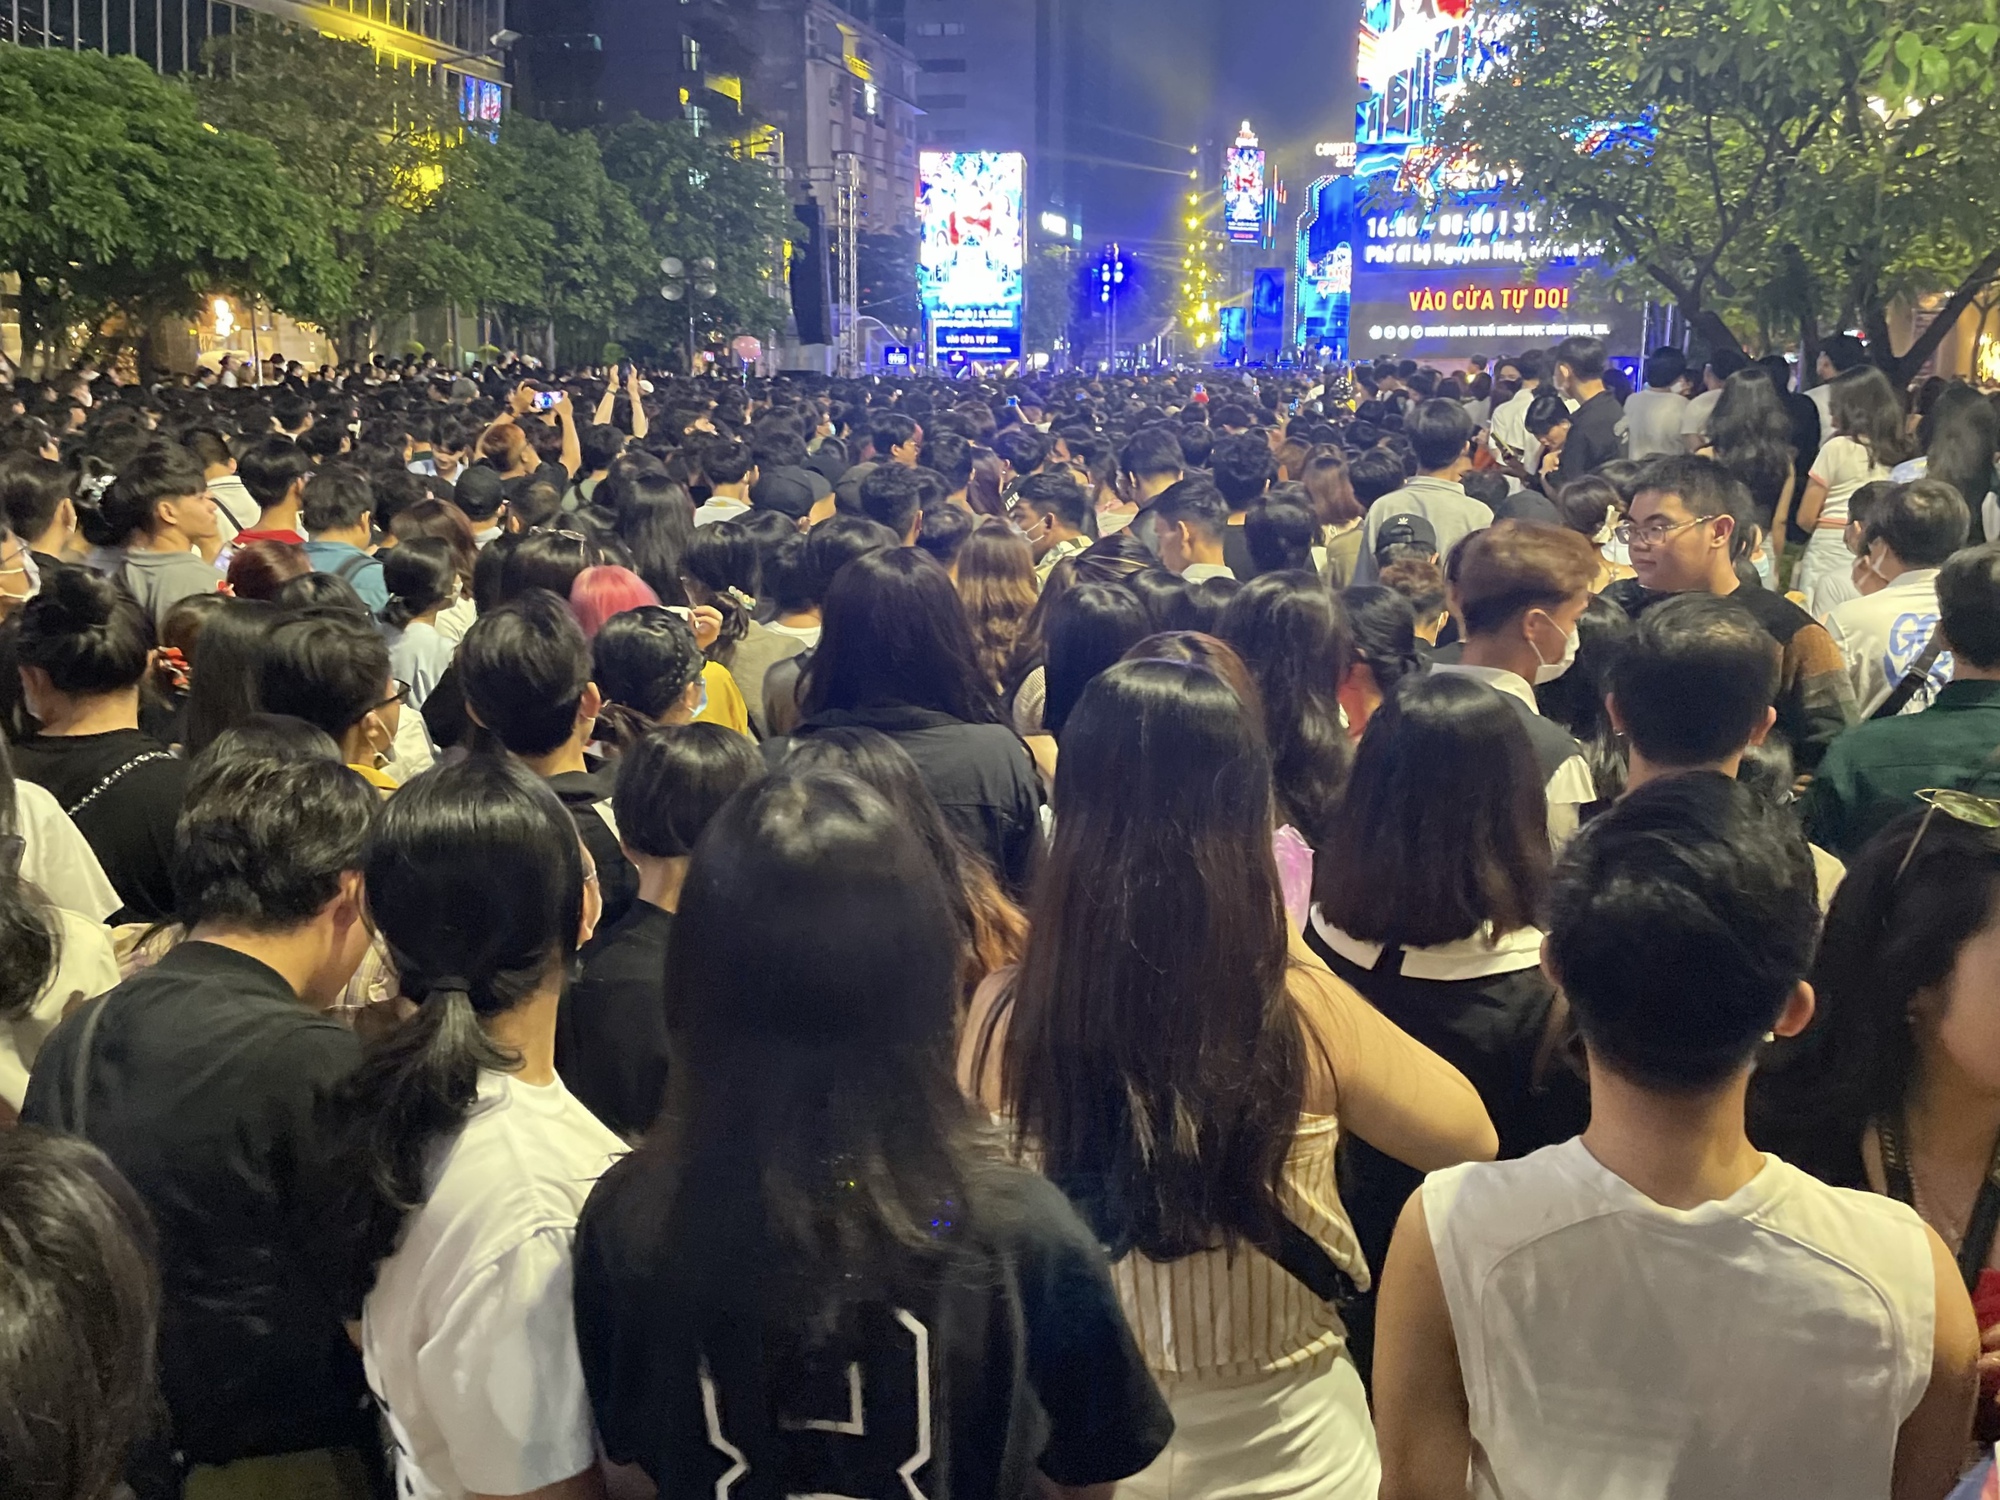 CLIP: Hàng nghìn người trẻ chen chúc, xếp hàng chật kín phố đi bộ Nguyễn Huệ từ 2 giờ trưa chờ countdown - Ảnh 4.